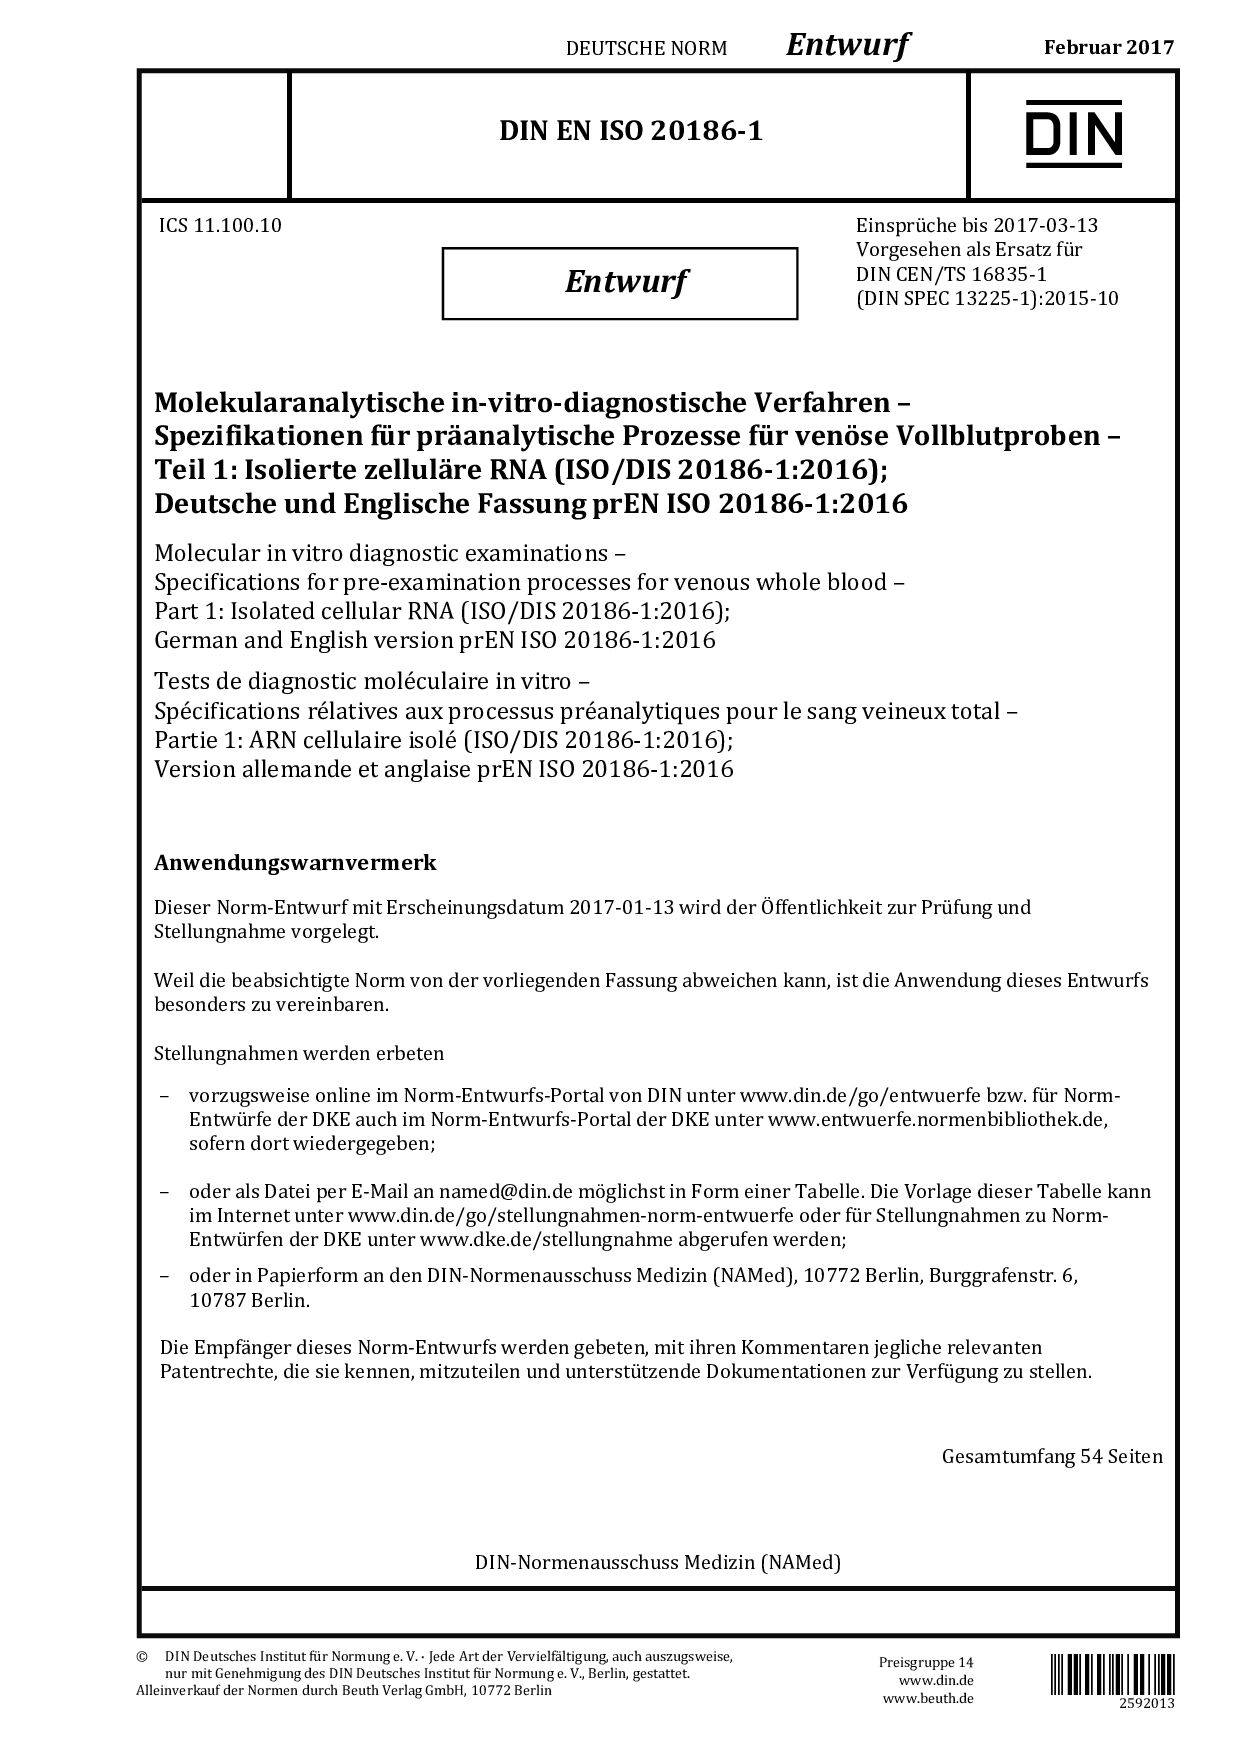 DIN EN ISO 20186-1 E:2017-02封面图